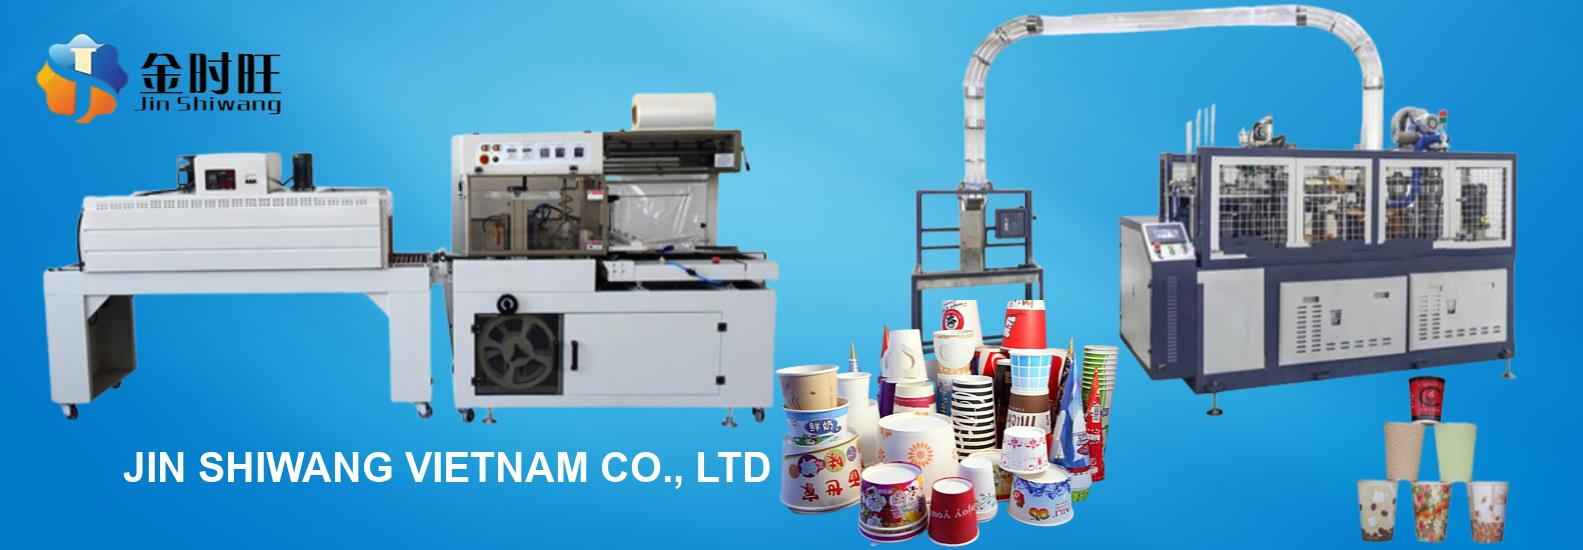 Máy sản xuất cốc giấy